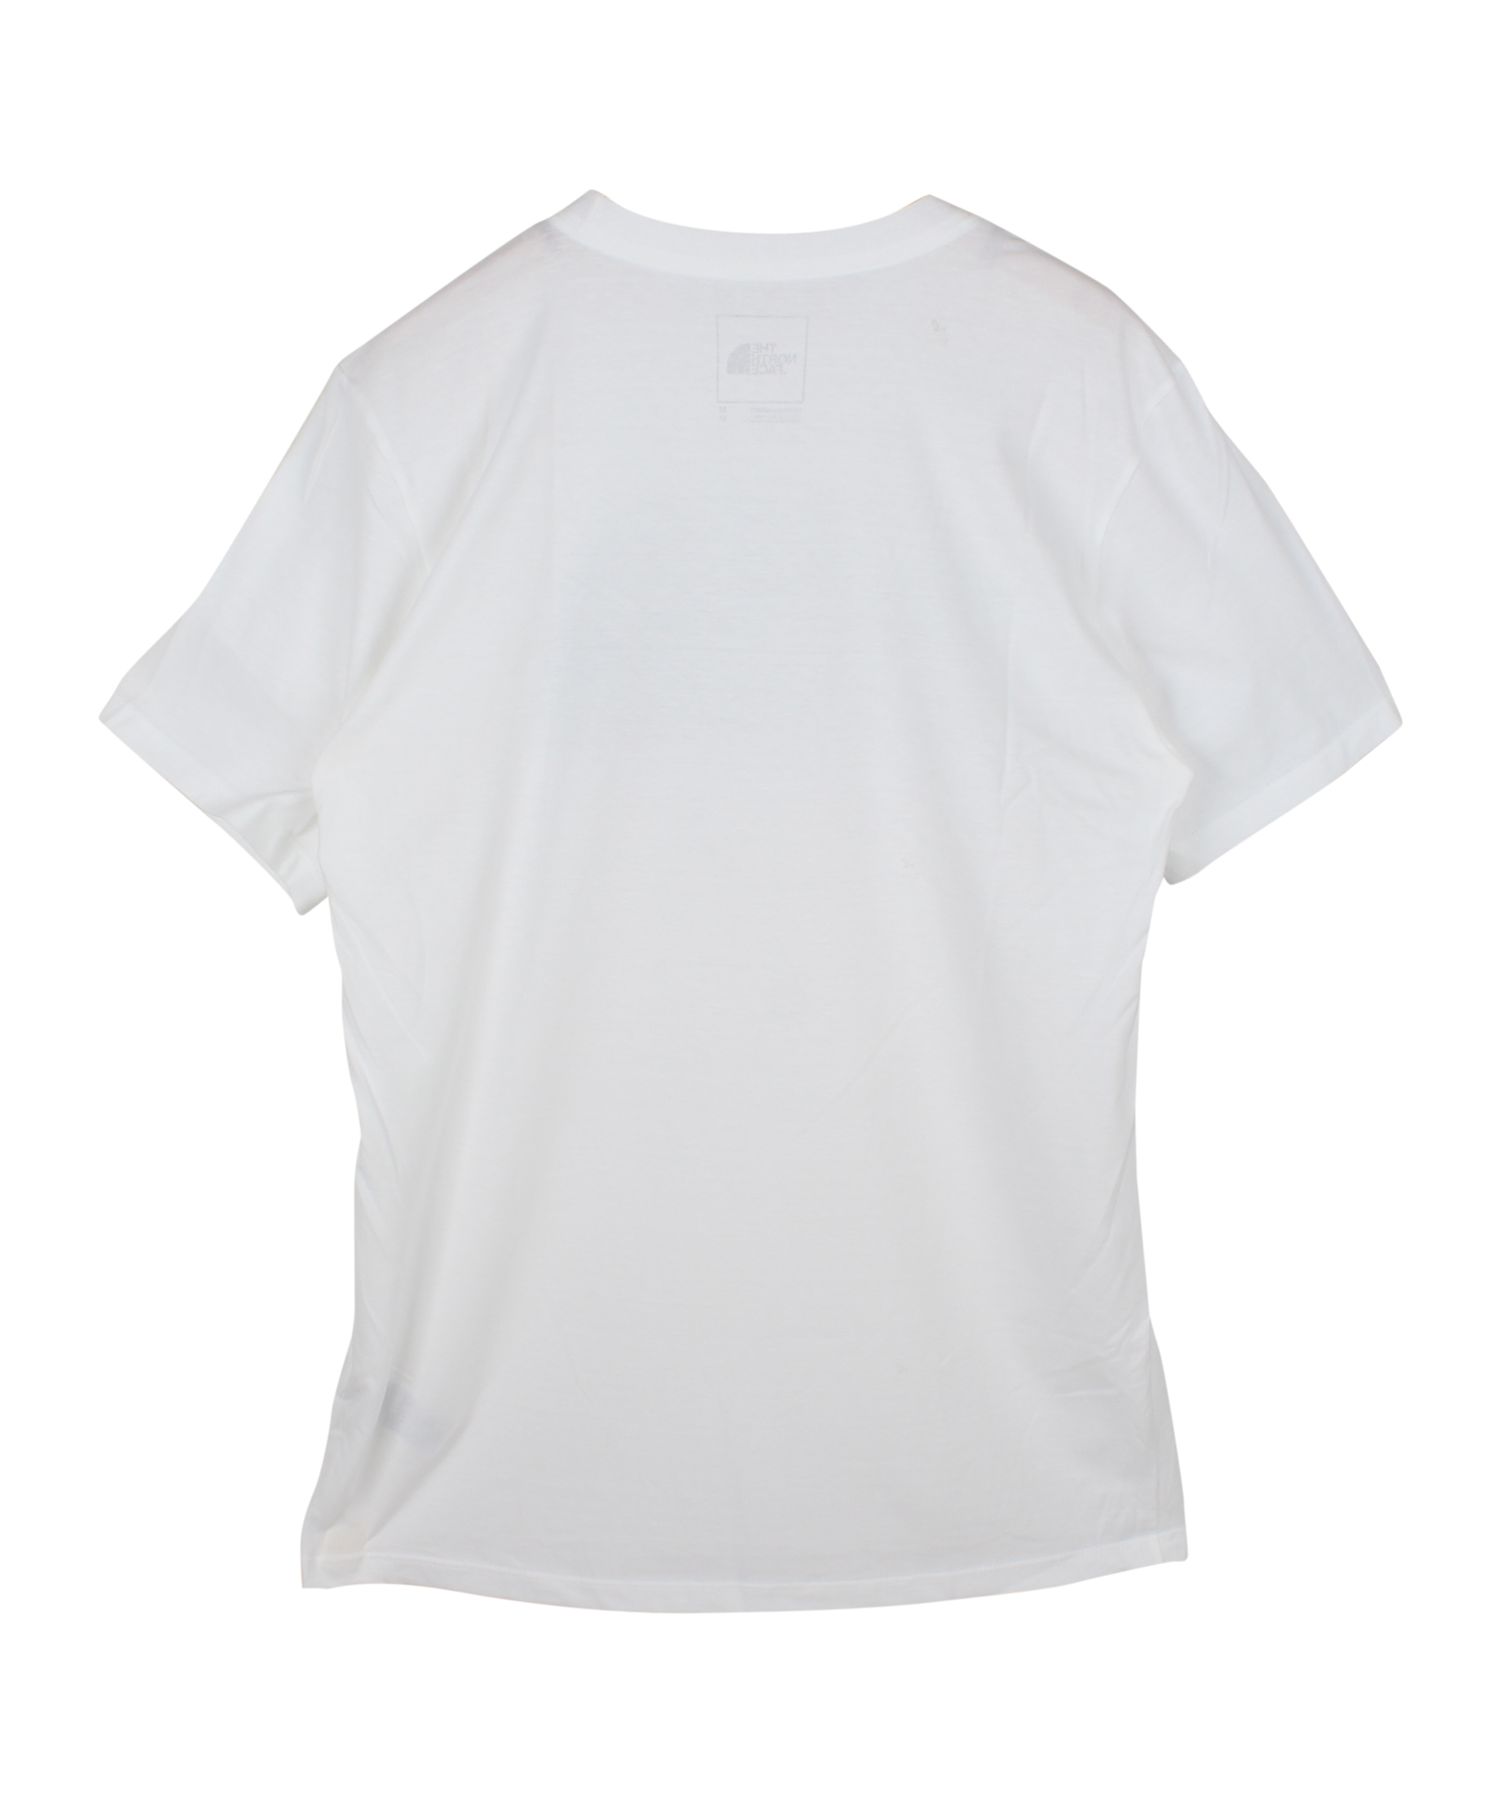 ザ ノースフェイス 原宿限定 半袖Tシャツ XL 白 ホワイト - トップス